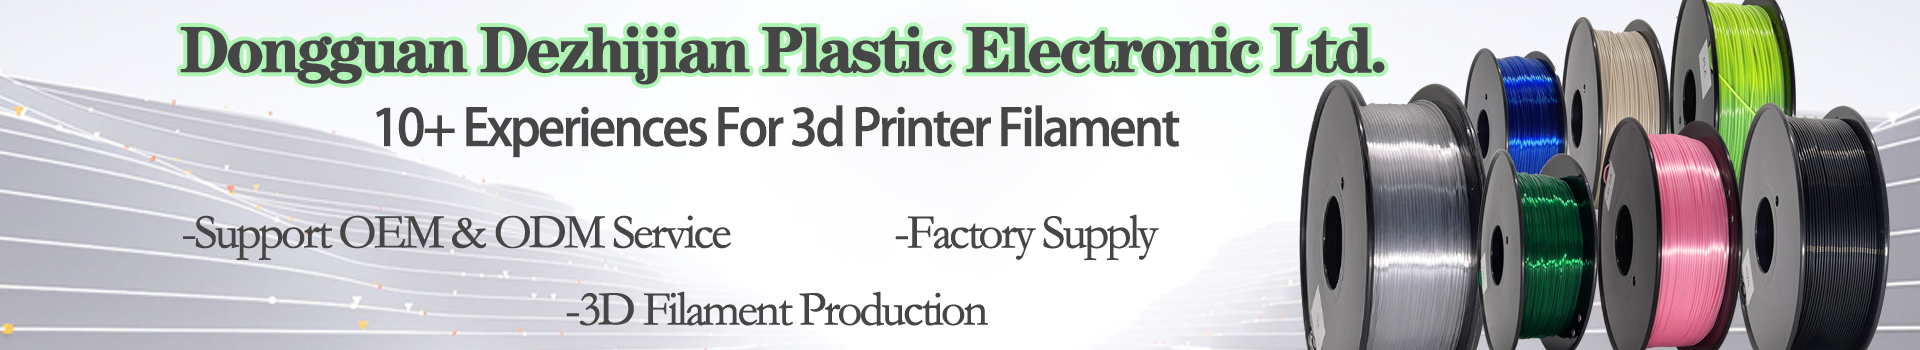 Pinrui TPU-95A TPU-filament för 3D-skrivfilament